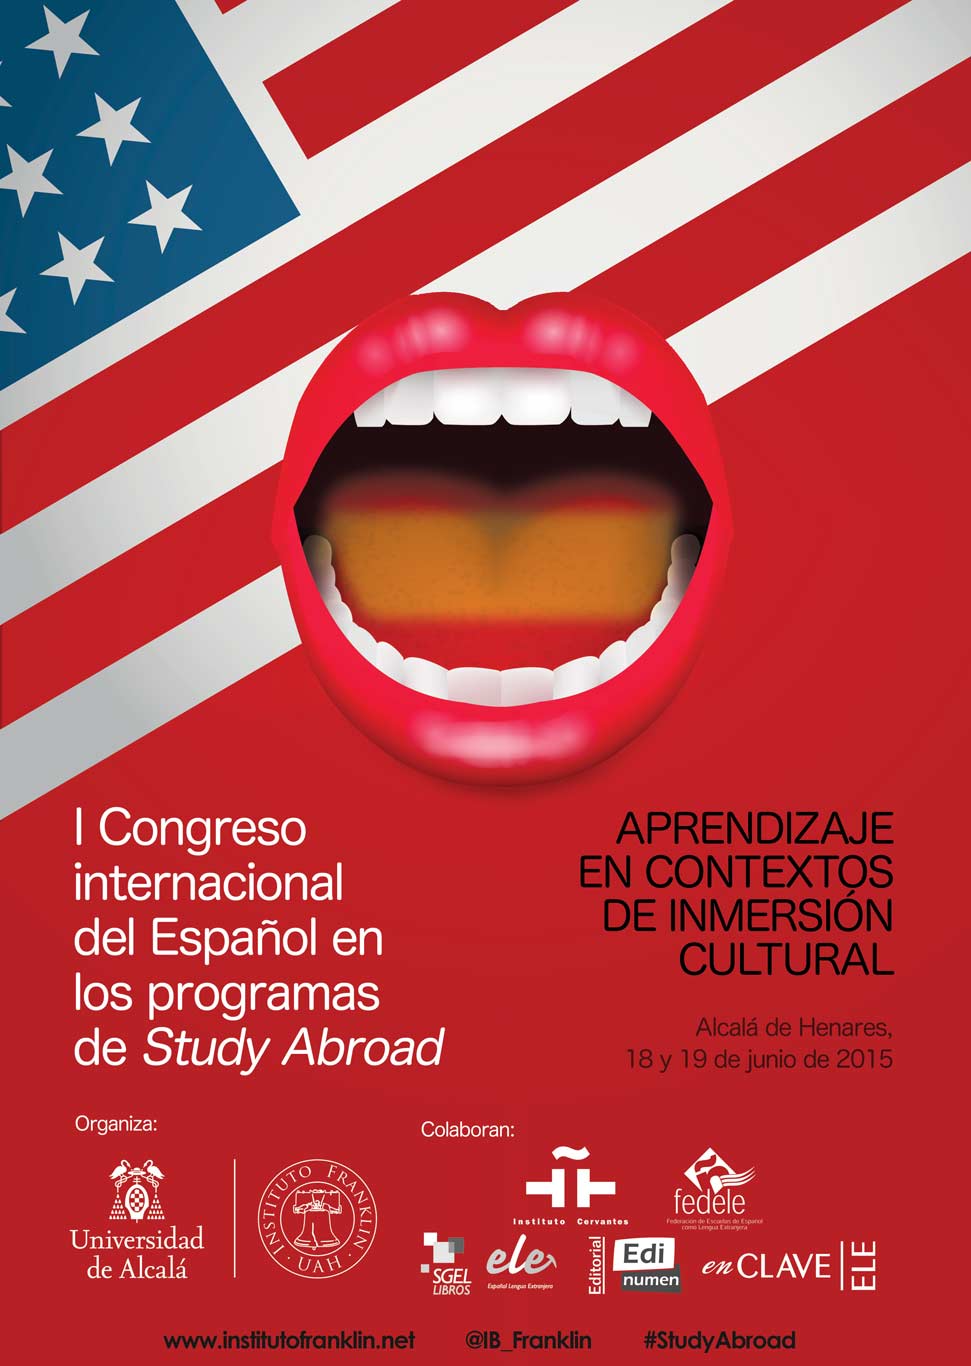 I Congreso internacional del Español del Instituto Franklin